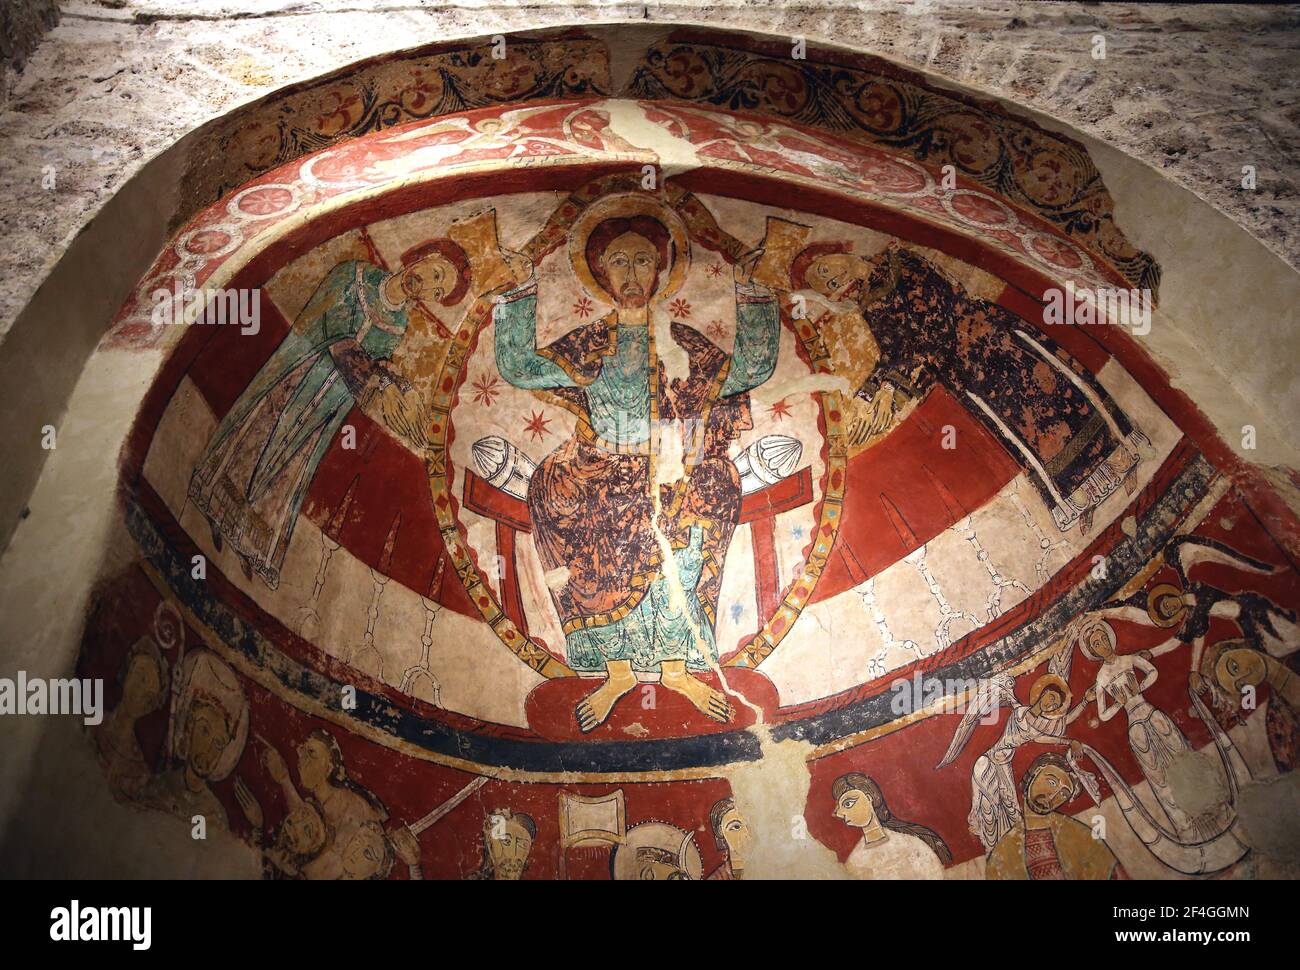 Martirio di Thomas Becket (1170) parte superiore dell'affresco, dettaglio. xii-xiii secolo. Chiesa di Santa Maria di Terrassa. Catalogna, Spagna. Foto Stock